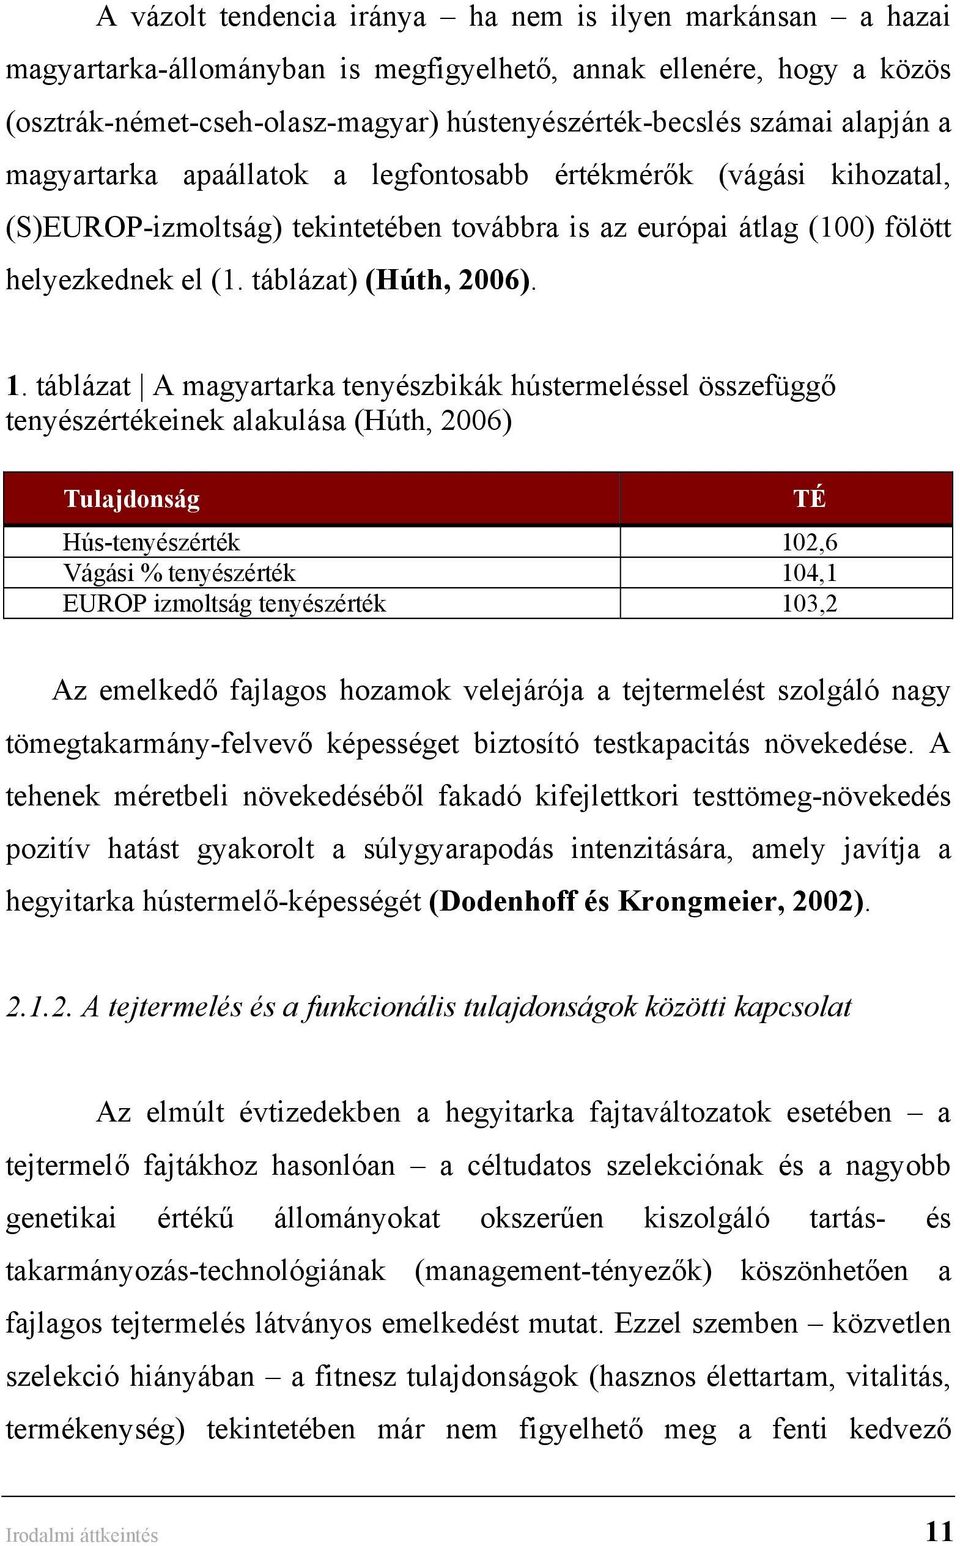 táblázat A magyartarka tenyészbikák hústermeléssel összefüggő tenyészértékeinek alakulása (Húth, 2006) Tulajdonság TÉ Hús-tenyészérték 102,6 Vágási % tenyészérték 104,1 EUROP izmoltság tenyészérték